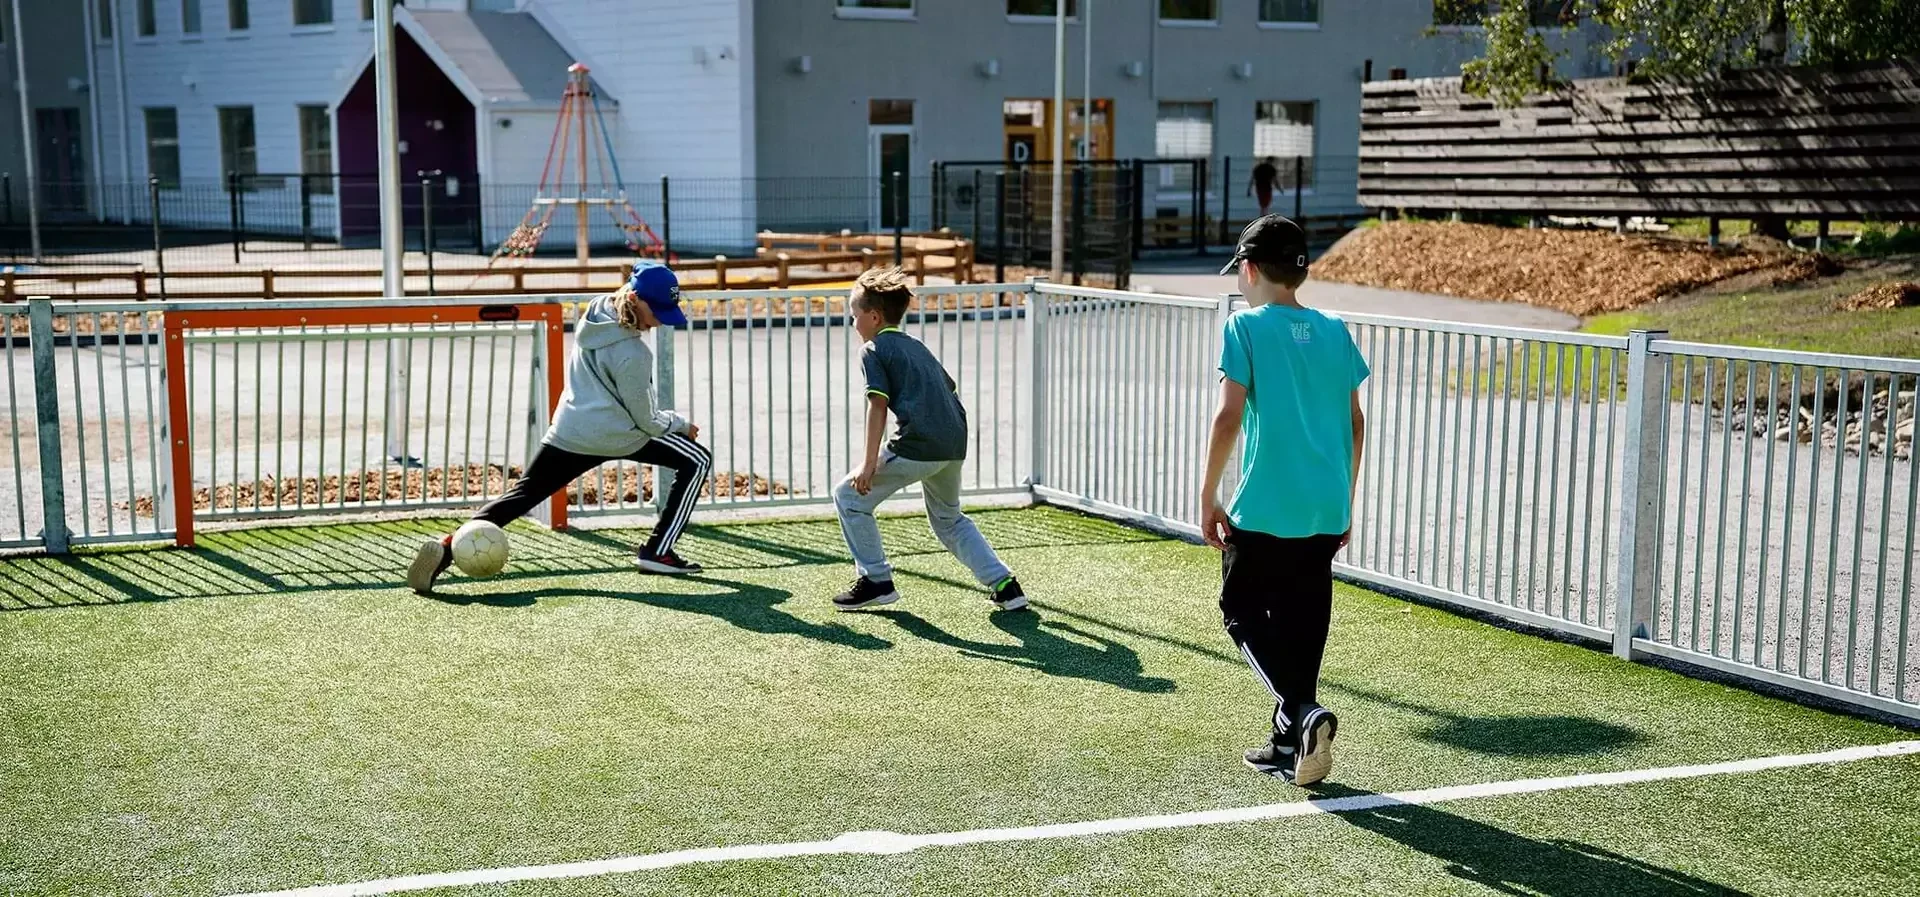 Kinder trainieren Fußball in einer Multisportanlage im Freien Referenzbild